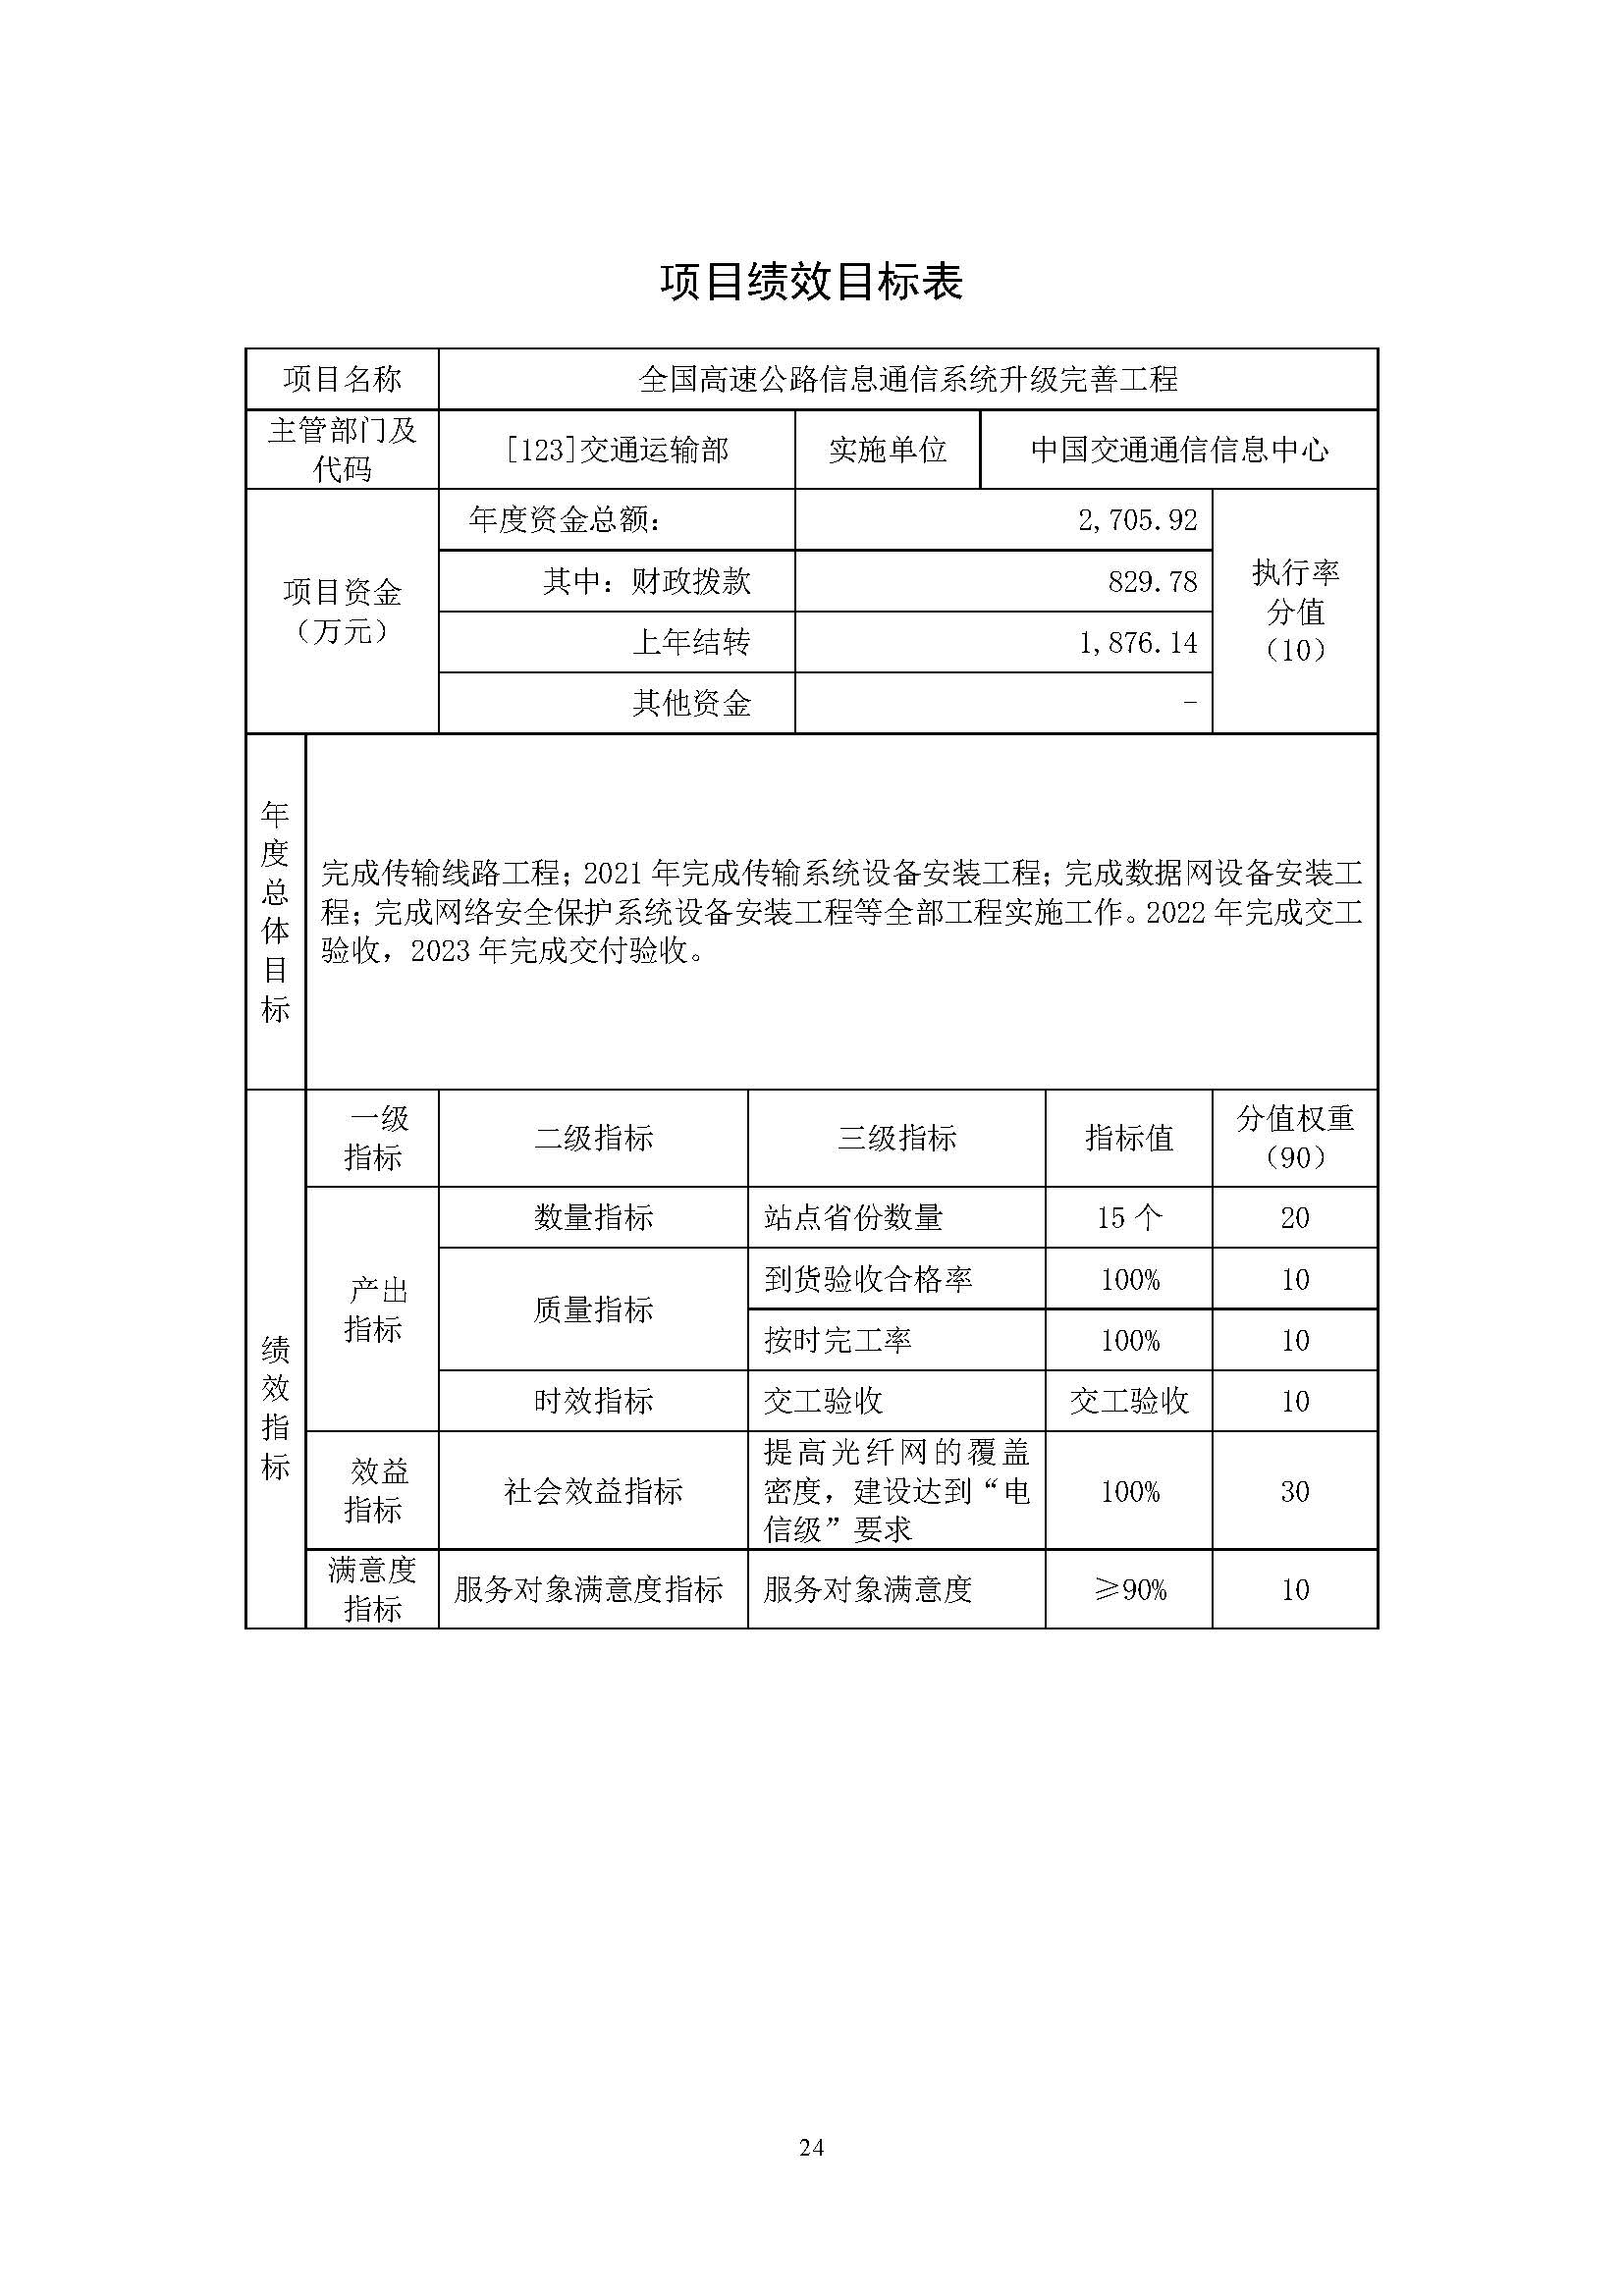 中国交通通信信息中心2023年度部门预算0420_页面_24.jpg